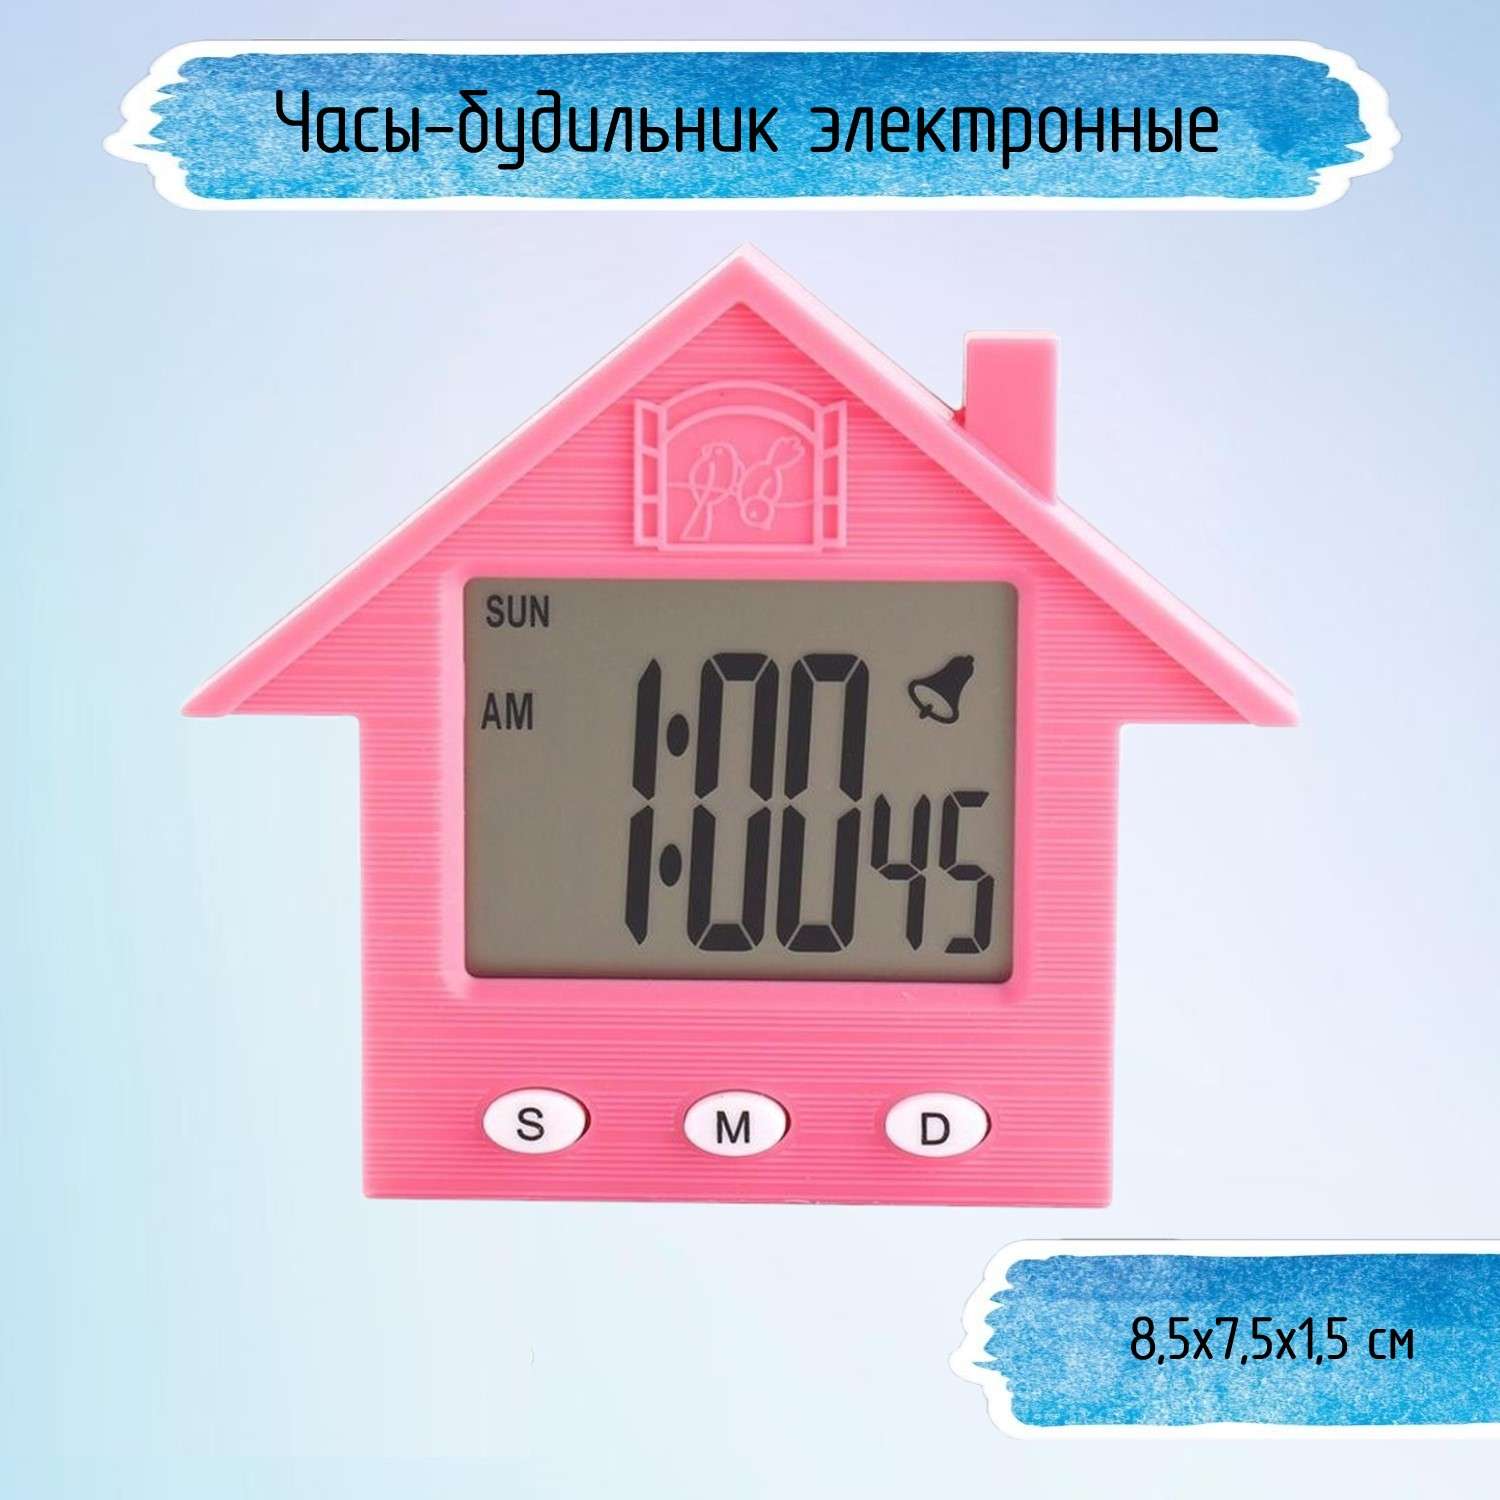 Часы-будильник Uniglodis электронные Домик розовый - фото 1